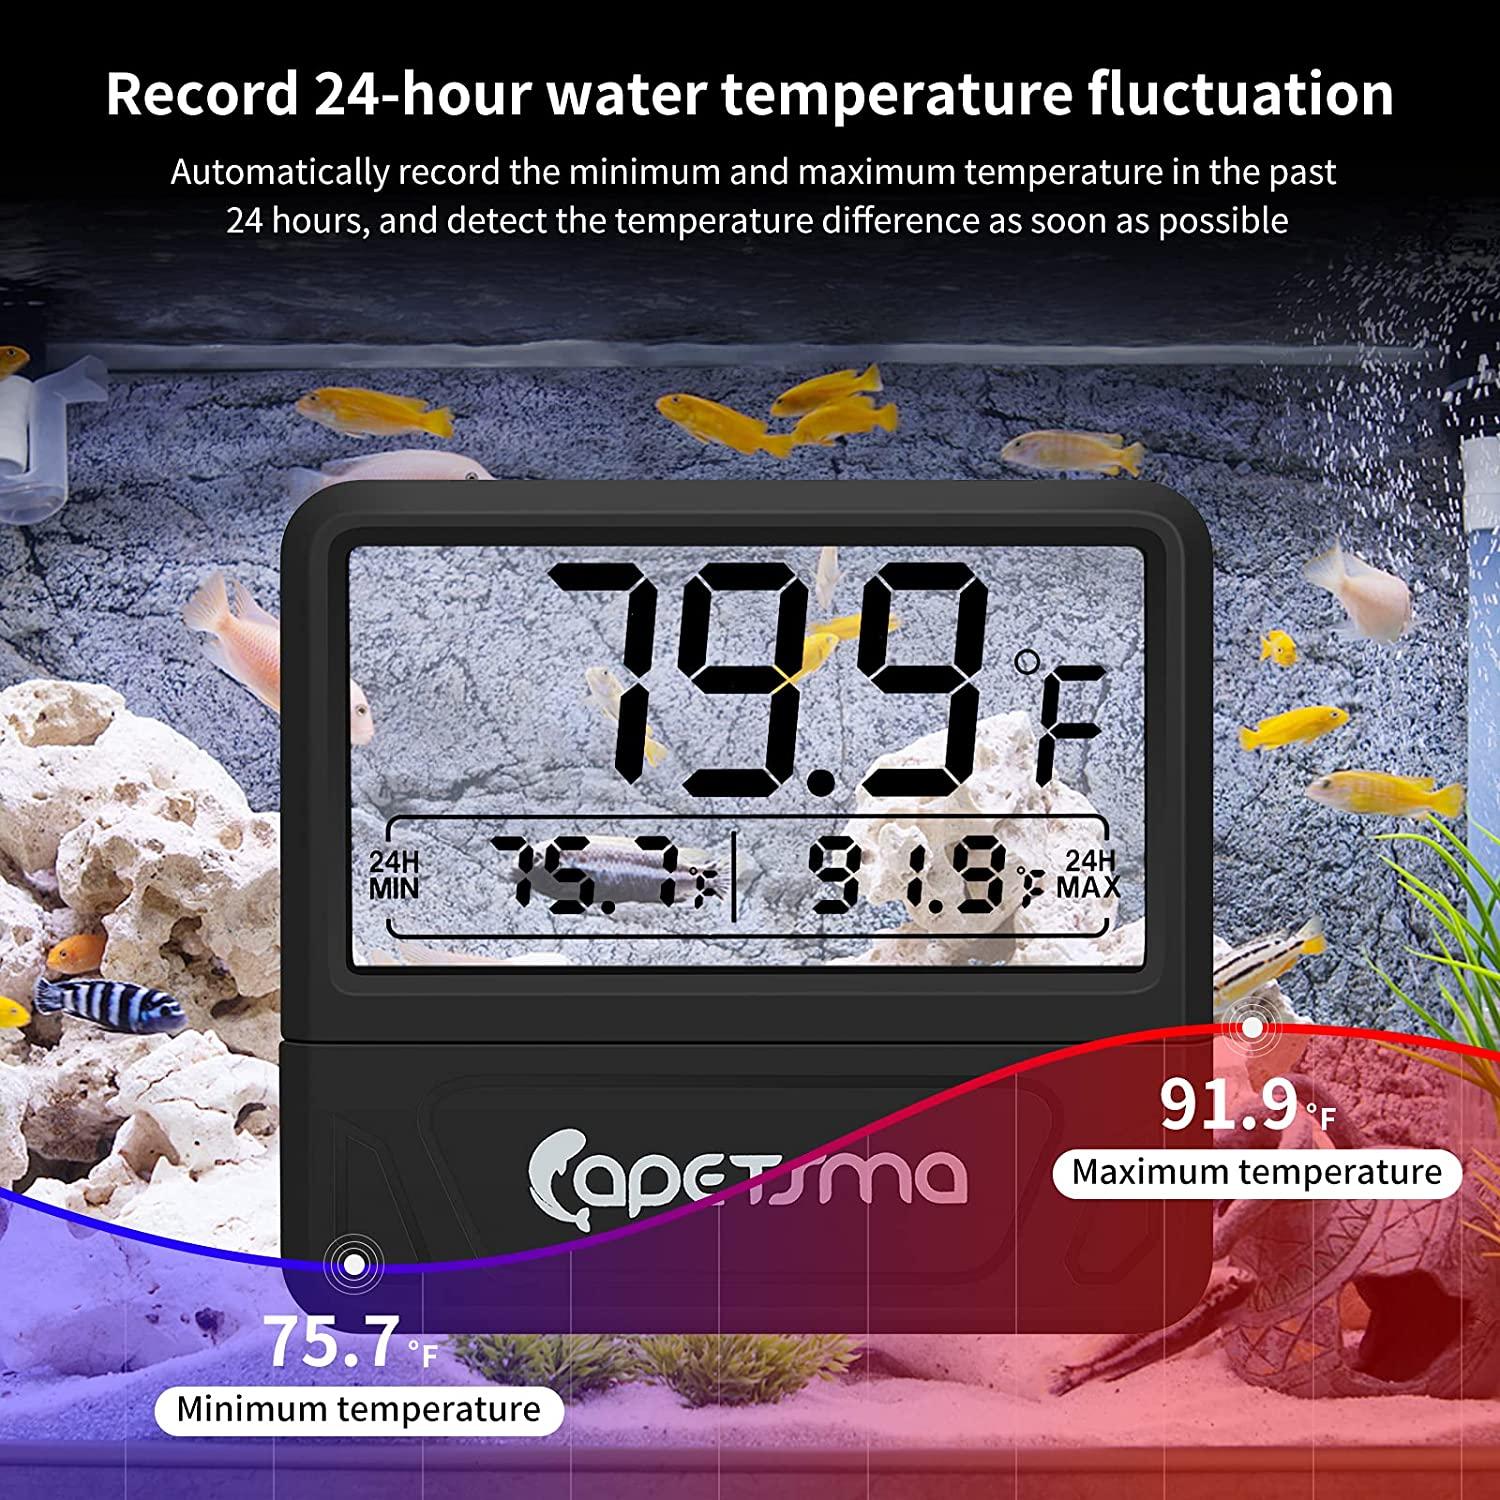 capetsma Aquarium Thermometer Digital Fish Tank Thermometer Large